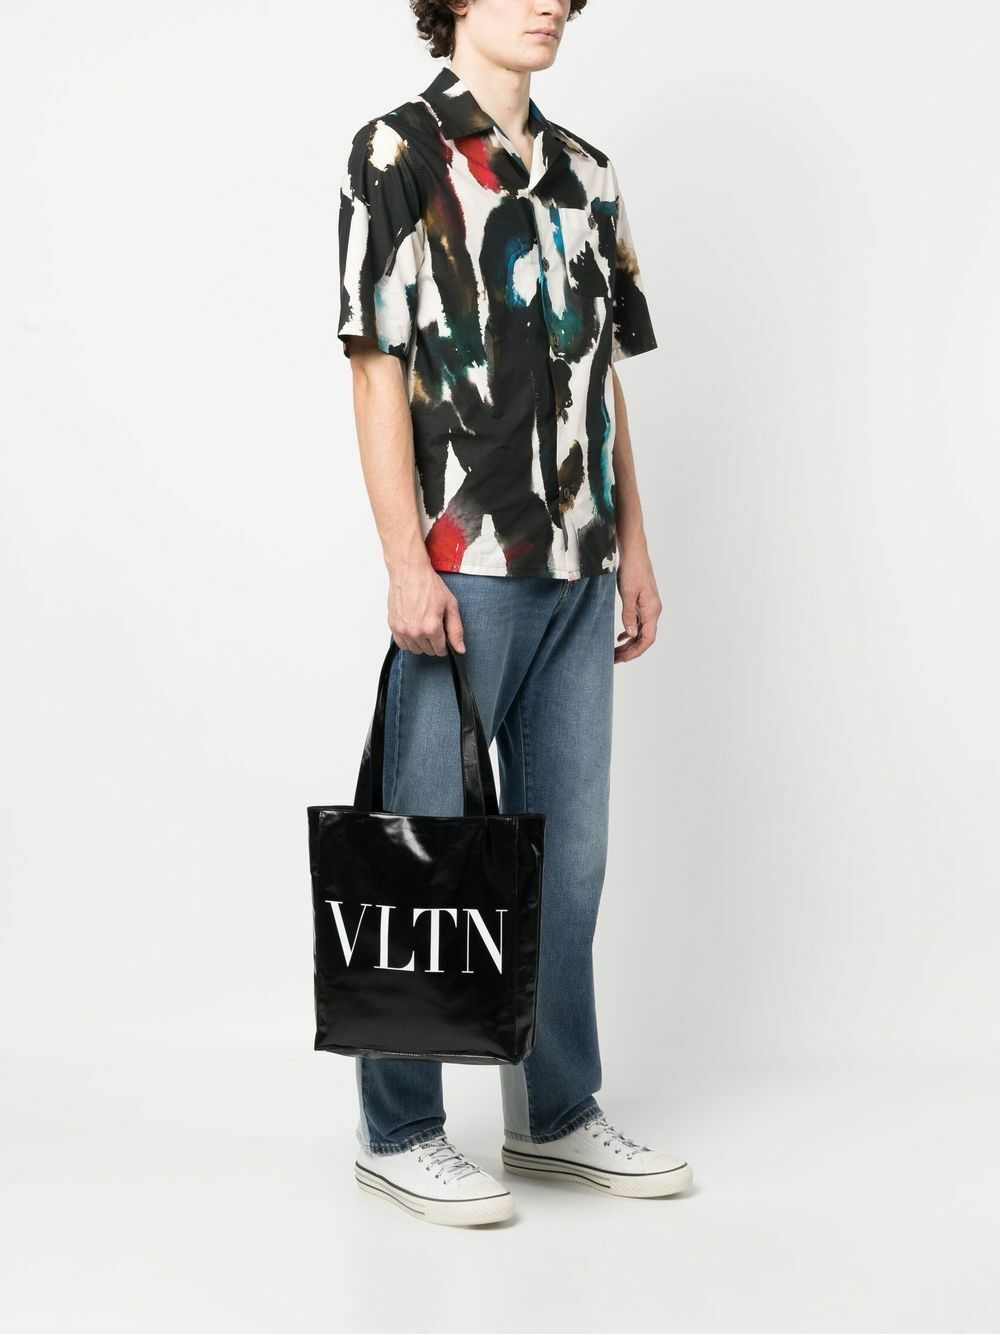 Valentino Garavani VLTN Soft black tote bag